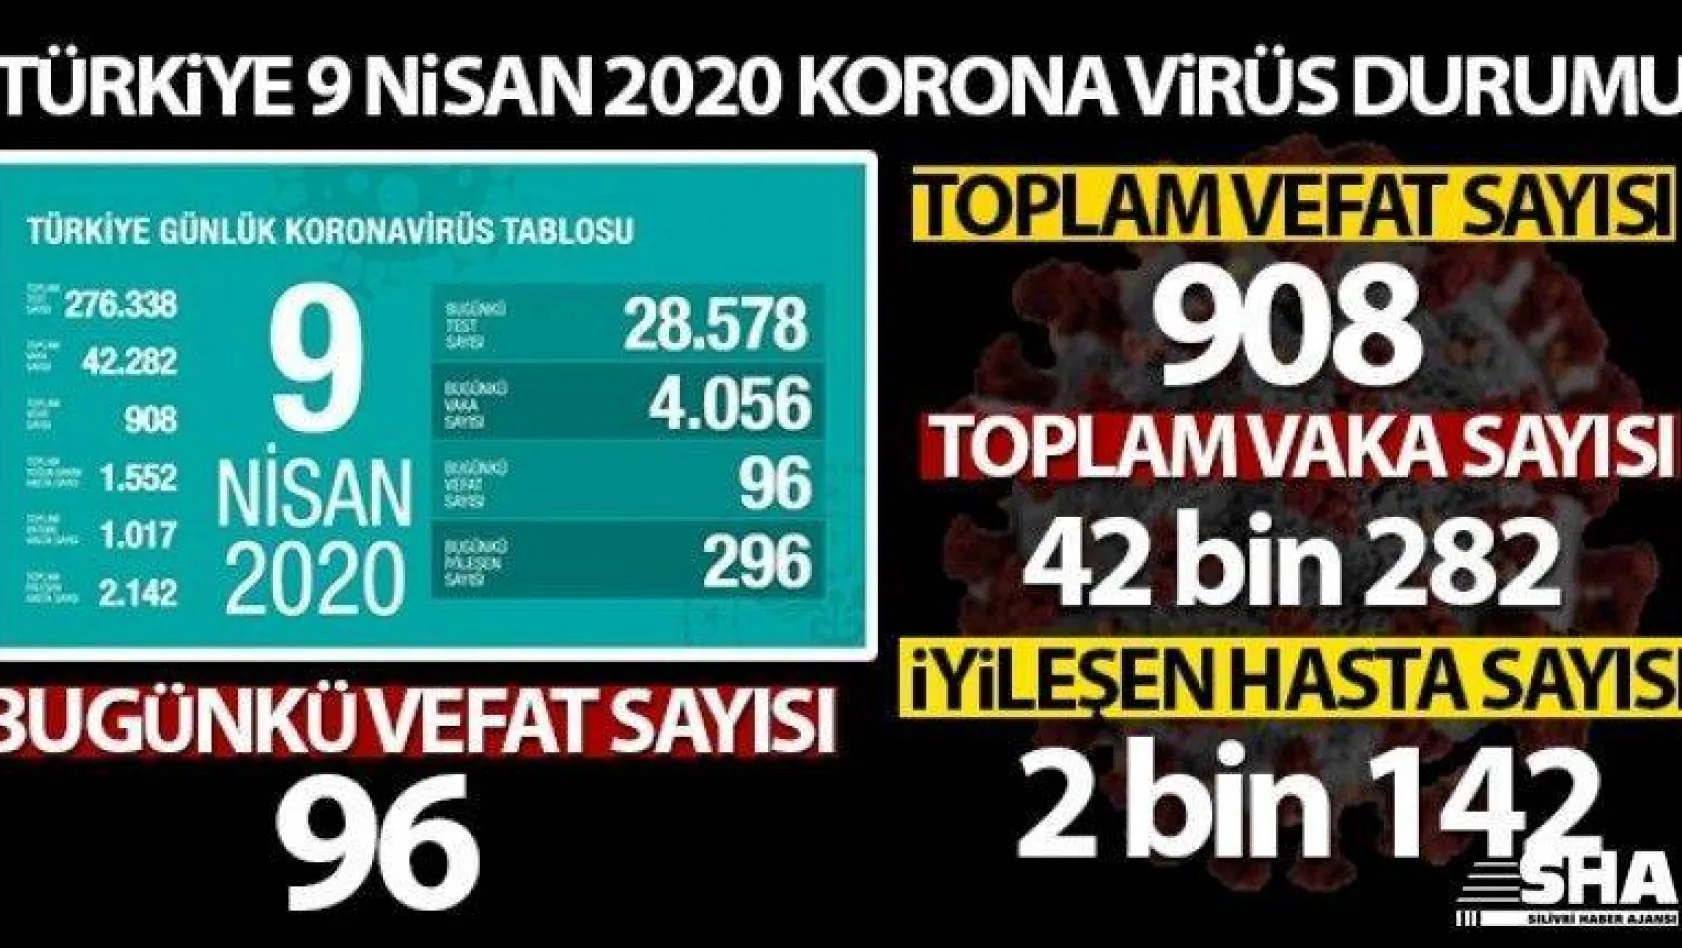 Türkiye'de son 24 saatte korona virüs nedeniyle 96 kişi hayatını kaybetti, toplam can kaybı 908'e ulaştı.